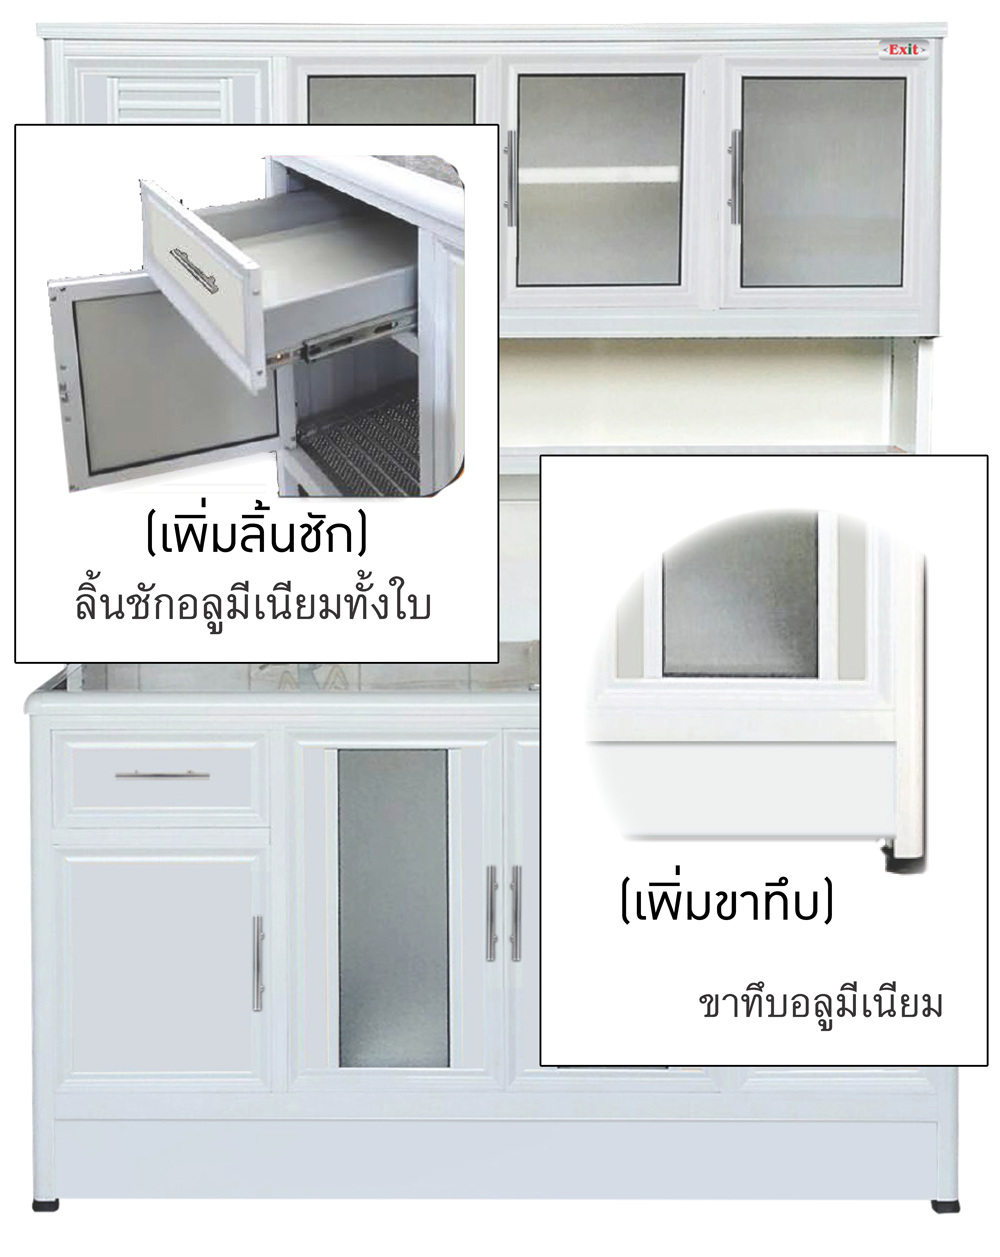 77095::EAG106C/C(ท็อปเข้าขอบ)::ตู้ครัวเข้ามุม 1.06 ม. ท็อปหินแกรนิต ท็อปเข้าขอบ รุ่น Exit เลือกลายกระเบื้องได้ เลือกหน้าบานได้ เลือกสีคอมโพสิตได้ ครัวไทย ตู้ครัวสูง อลูมิเนียม